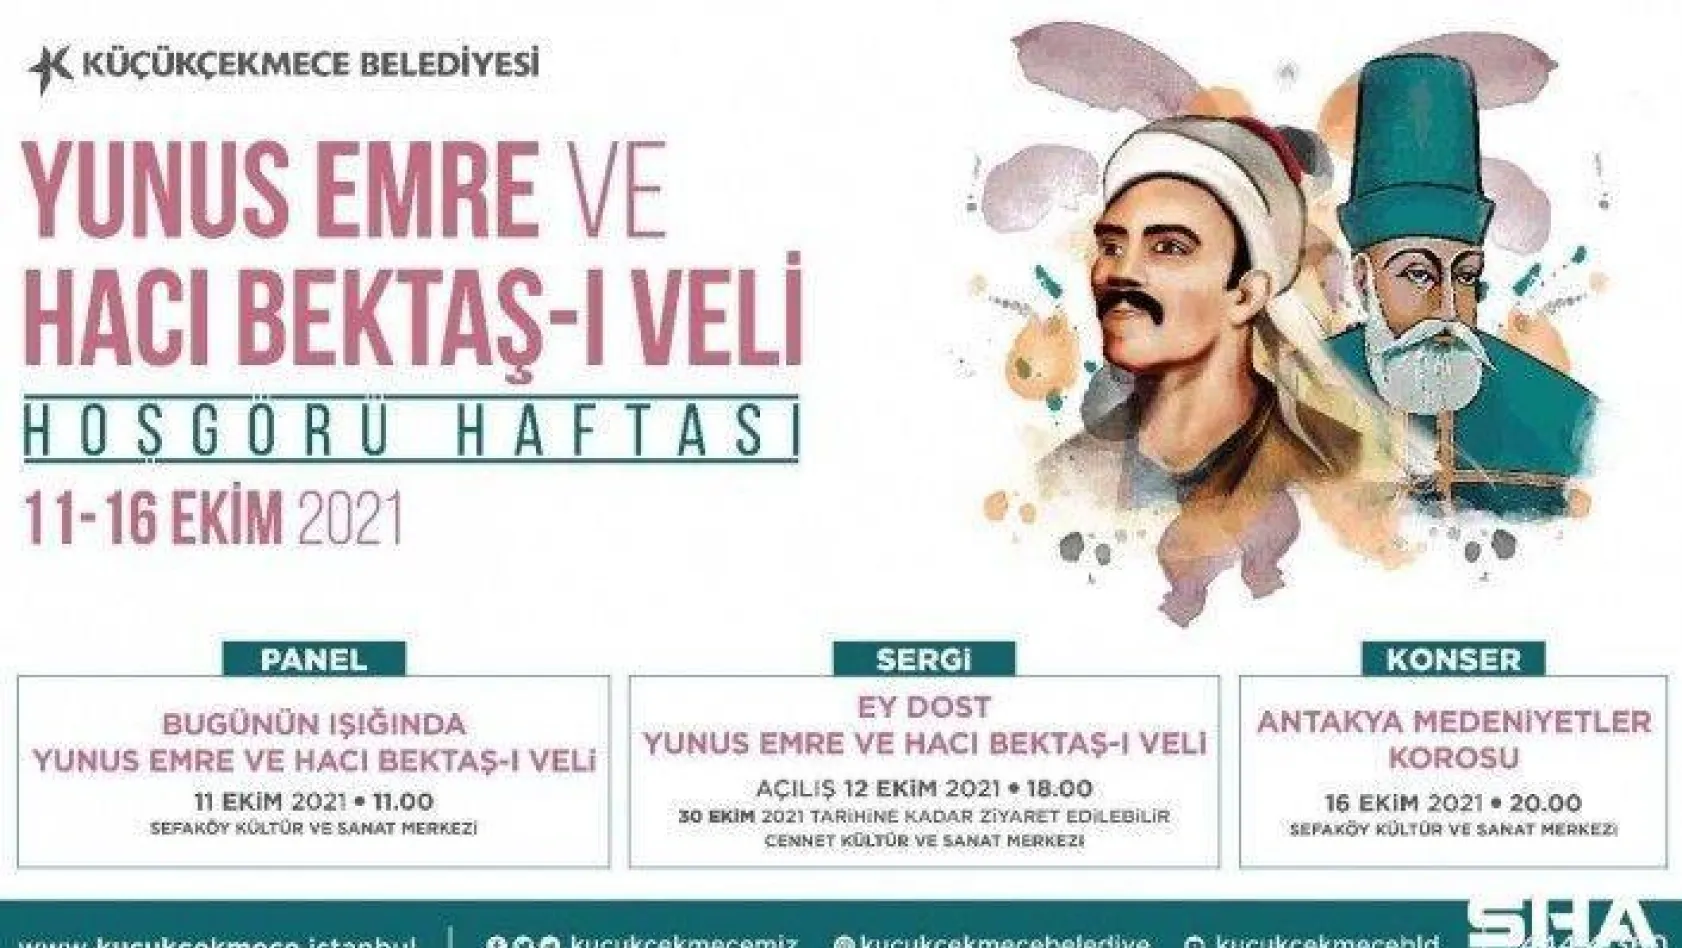 Hacı Bektaş-ı Veli ve Yunus Emre'nin ışığında hoşgörü haftası etkinlikleri Küçükçekmece'de başlıyor